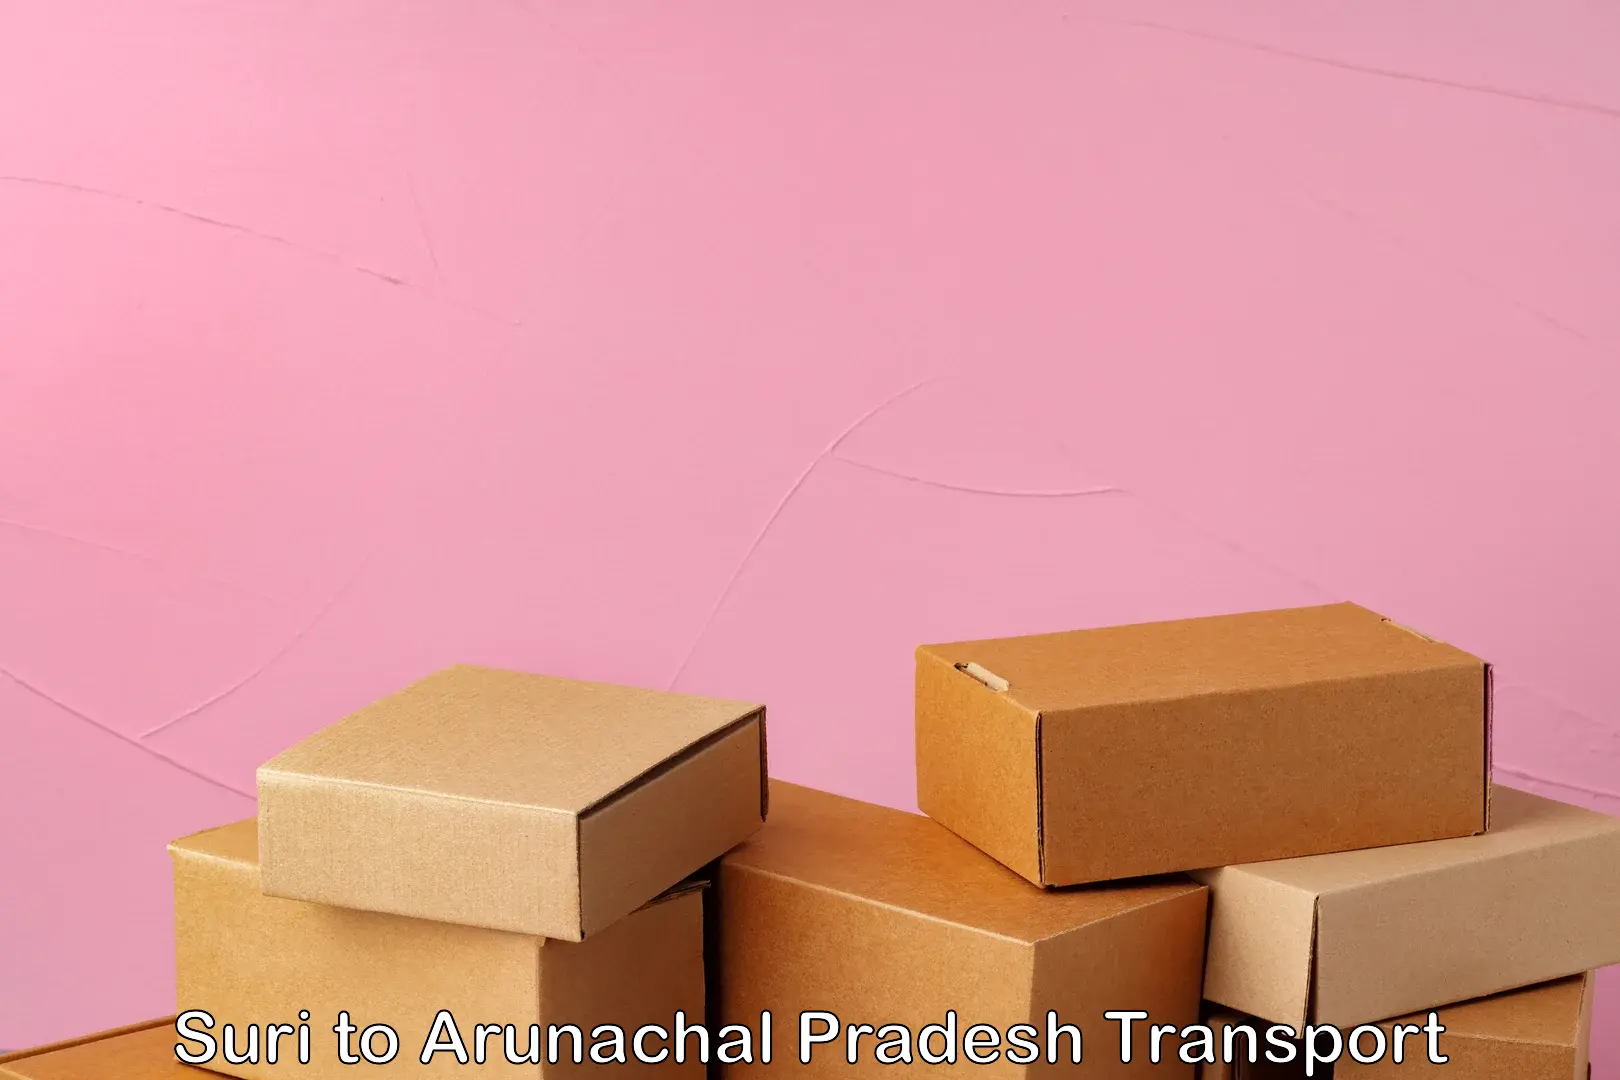 Parcel transport services Suri to Arunachal Pradesh